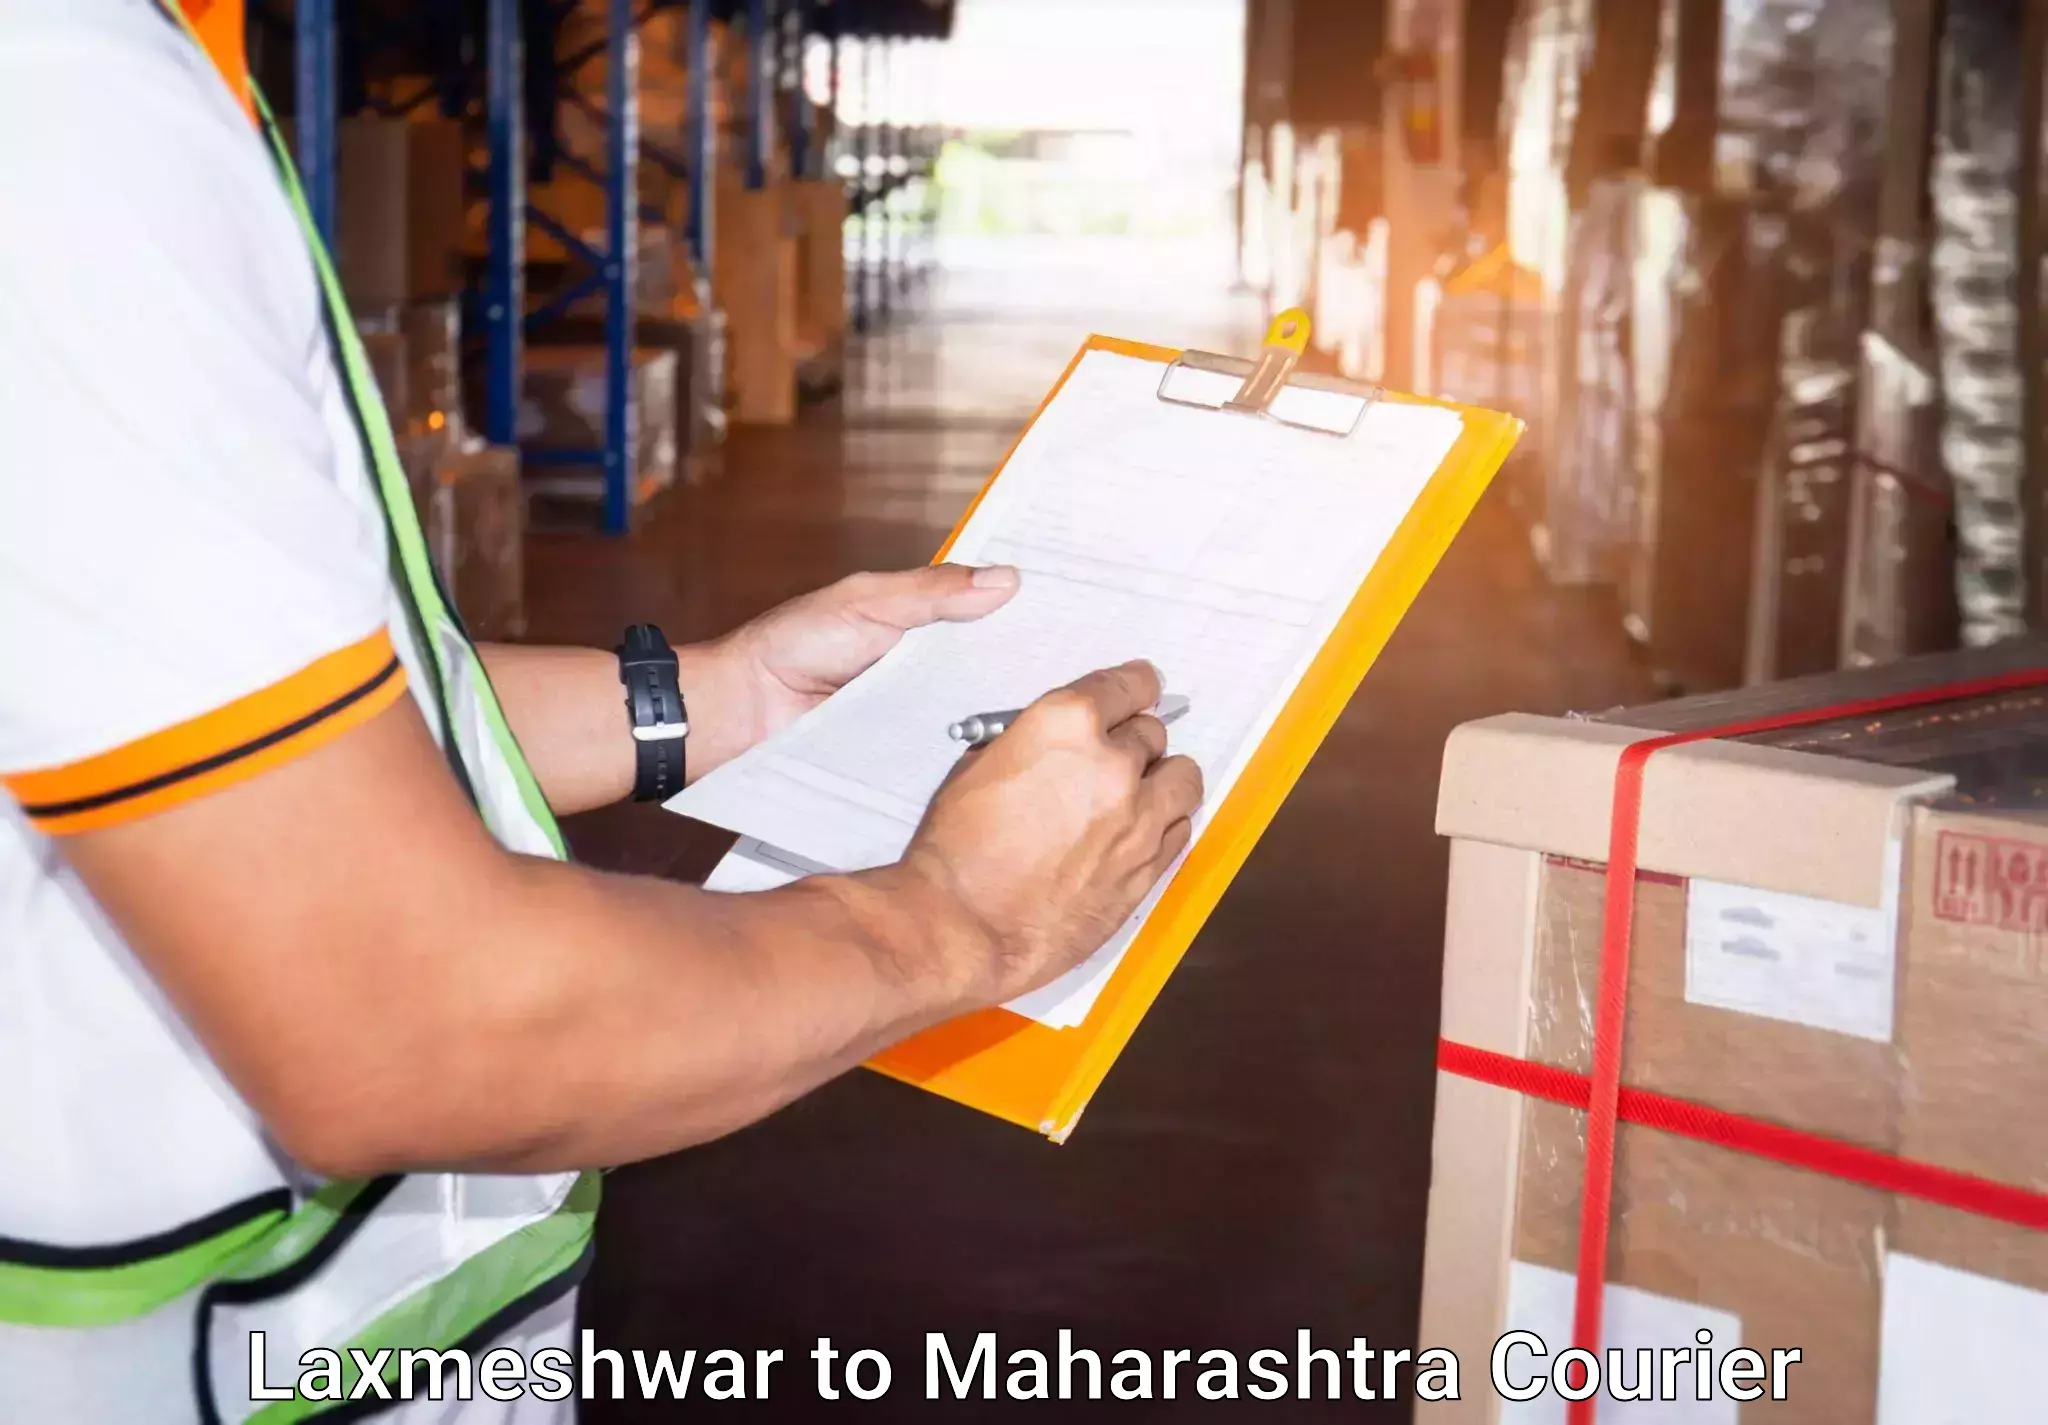 Luggage delivery optimization in Laxmeshwar to Mumbai University